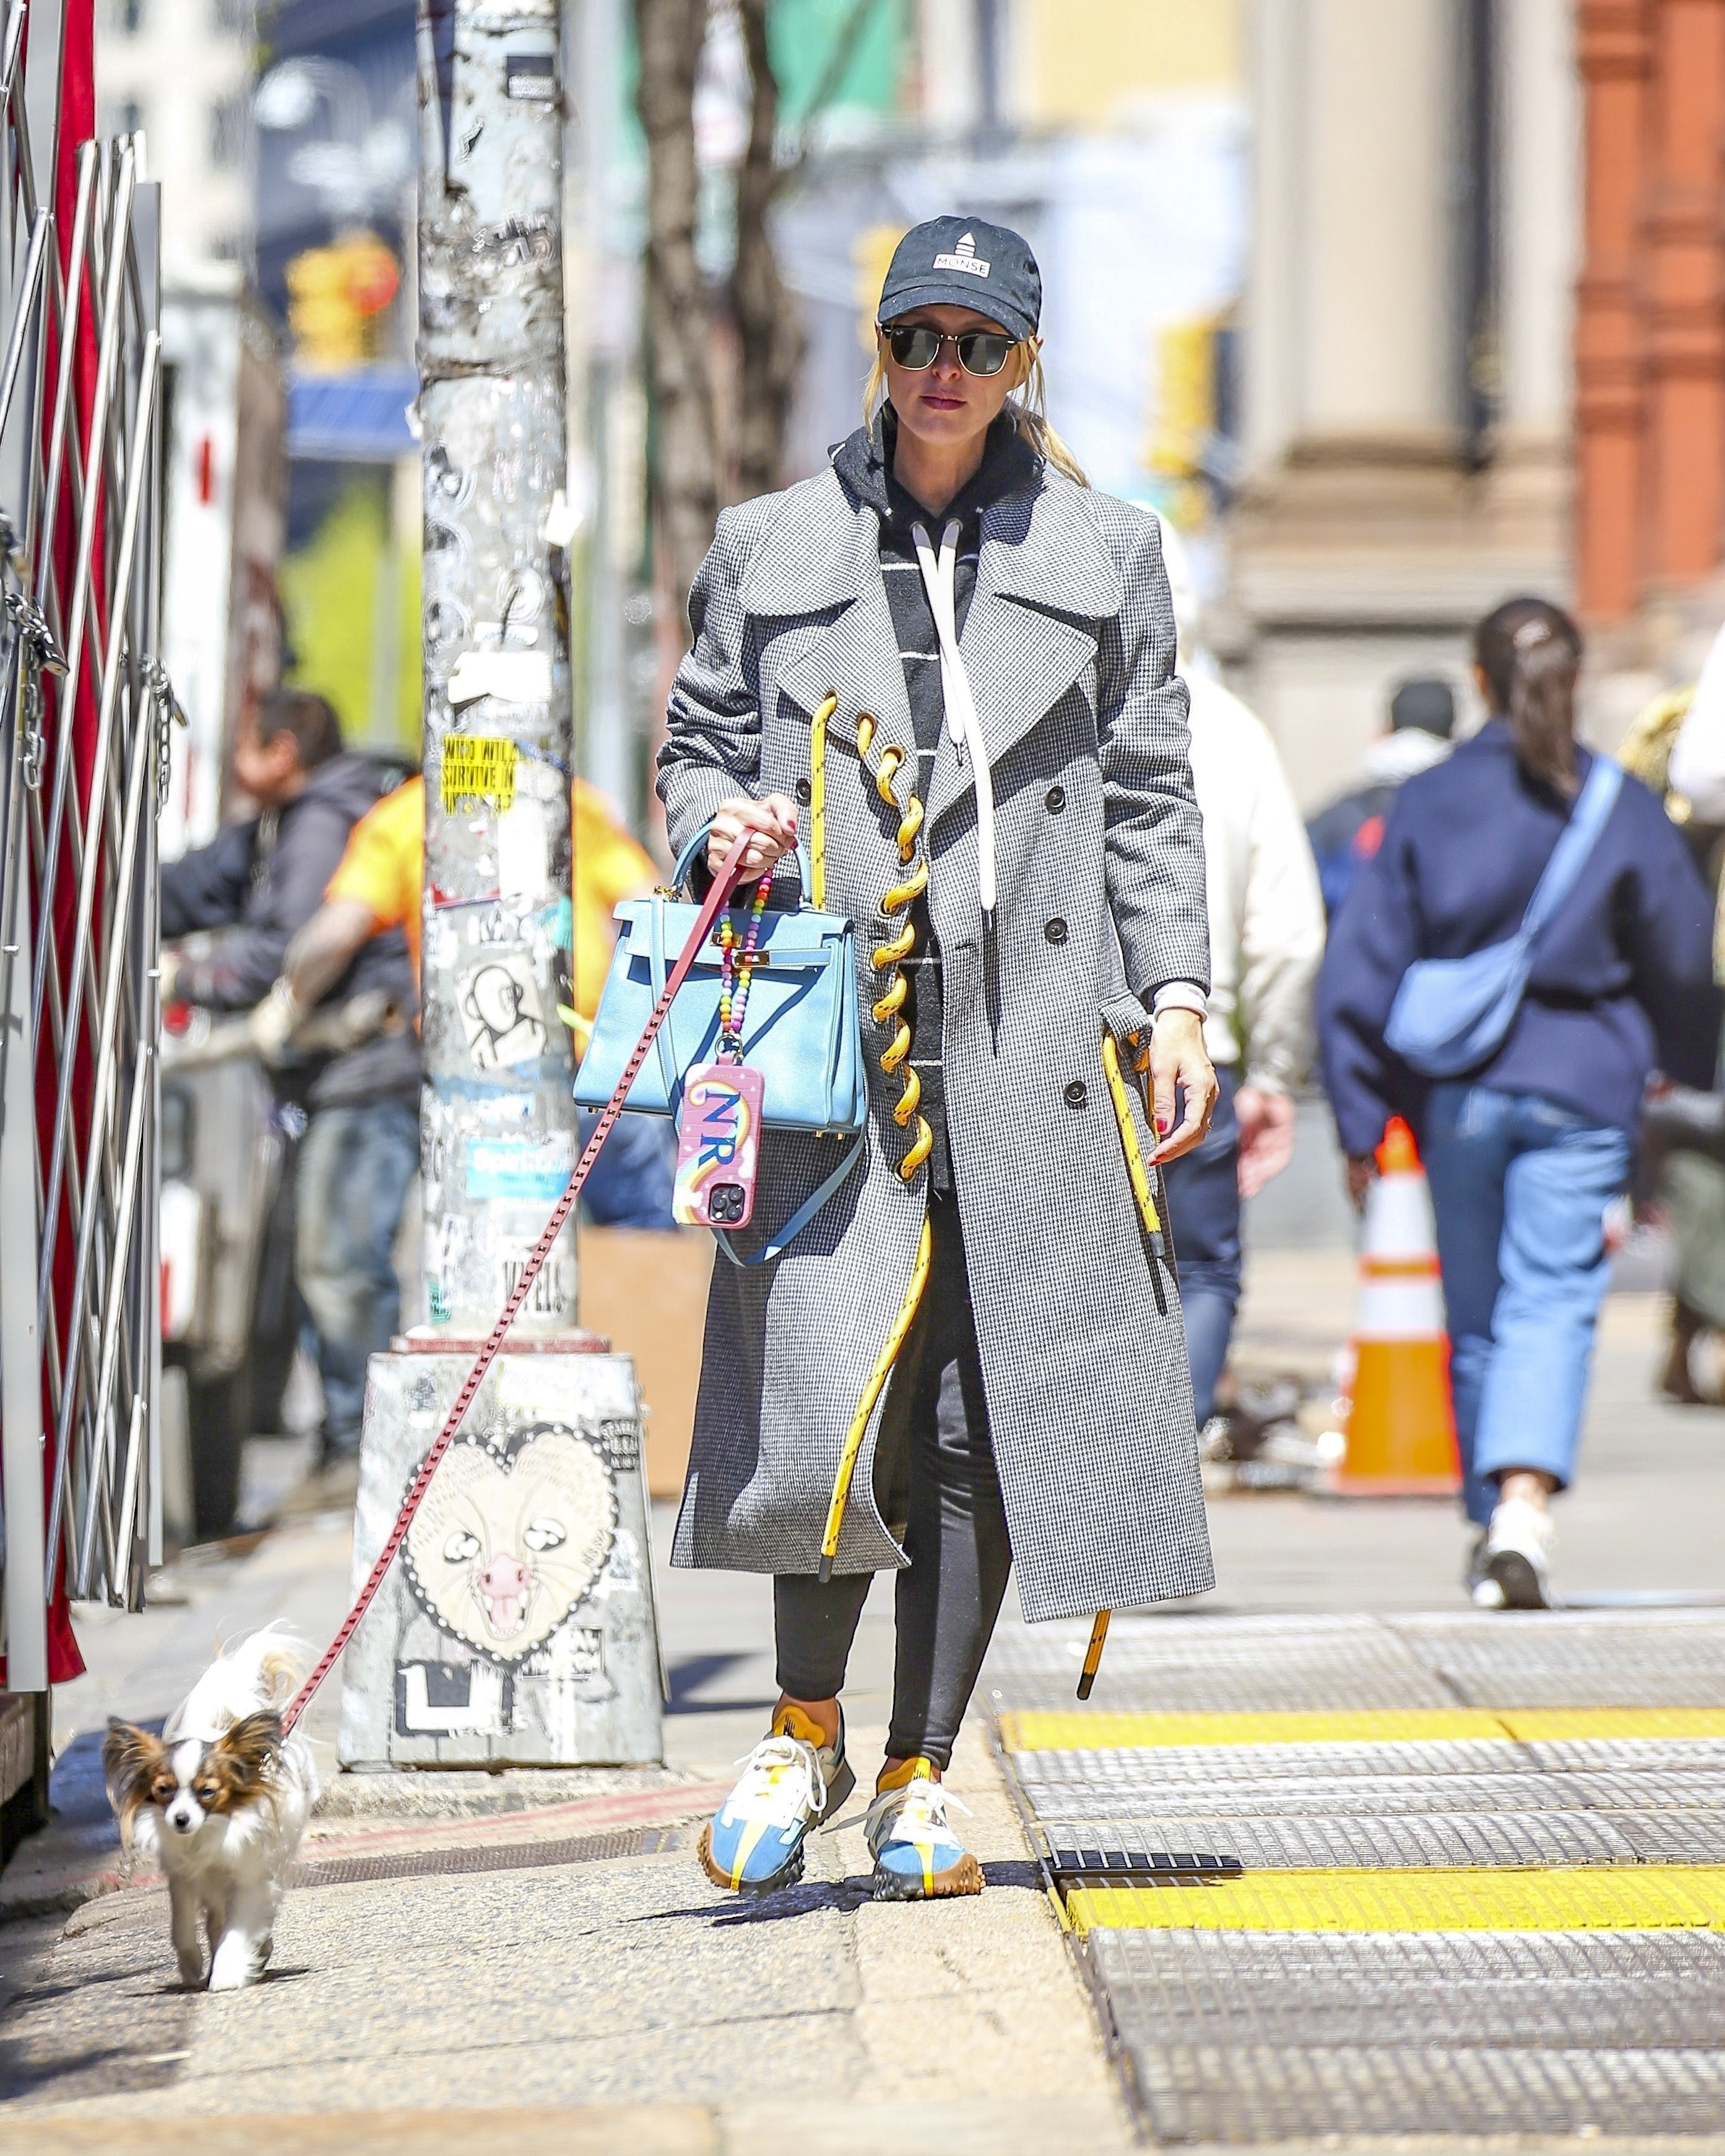 Nicky Hilton fue fotografiada mientras paseaba a su perro por las calles de Manhattan, en Nueva York. Lució un tapado gris con grandes cuerdas amarillas, una cartera turquesa, y llevó lentes de sol y gorra para pasar desapercibida